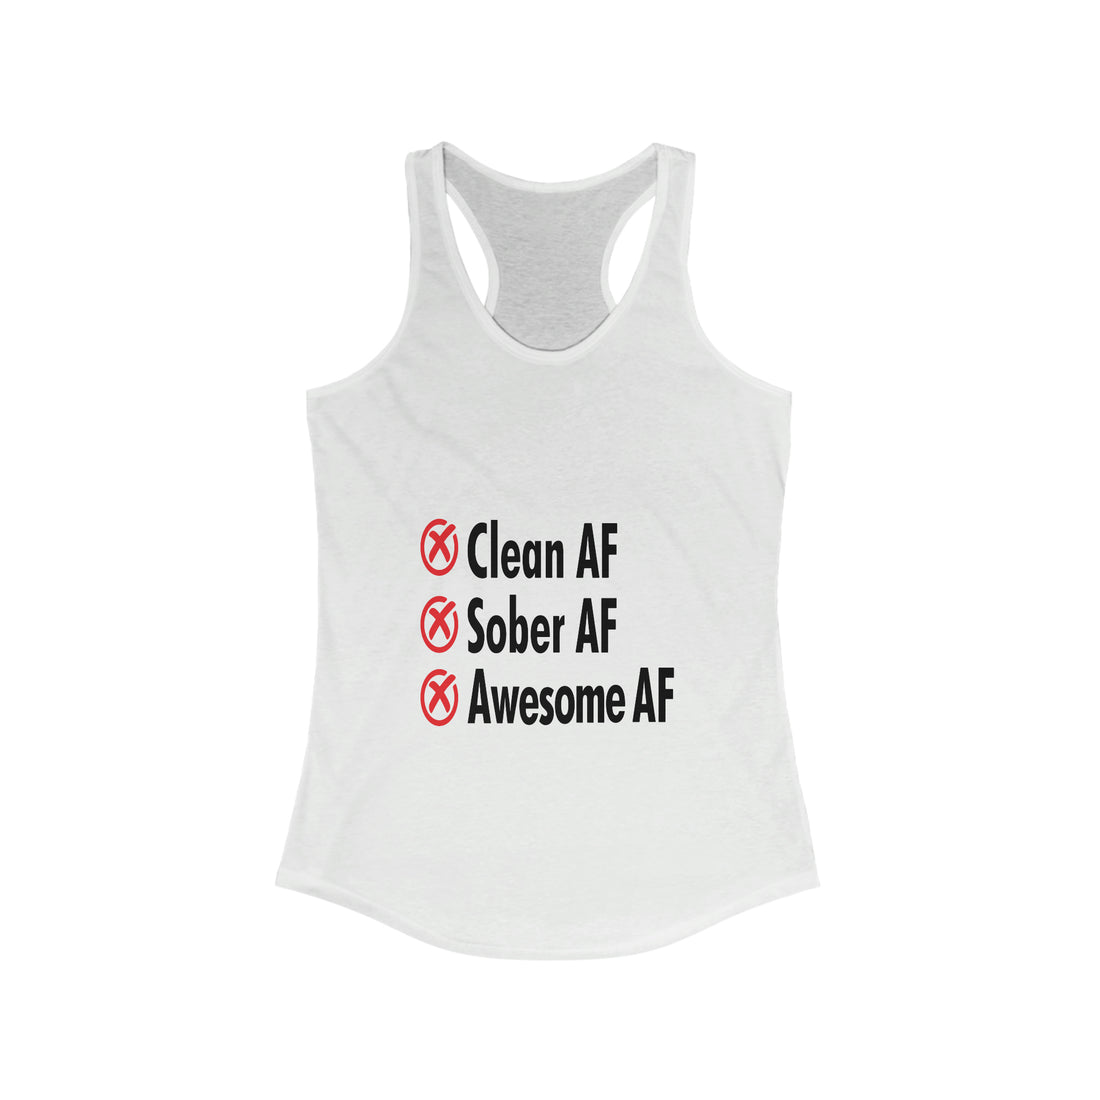 Clean AF Sober AF Awesome AF - Racerback Tank Top